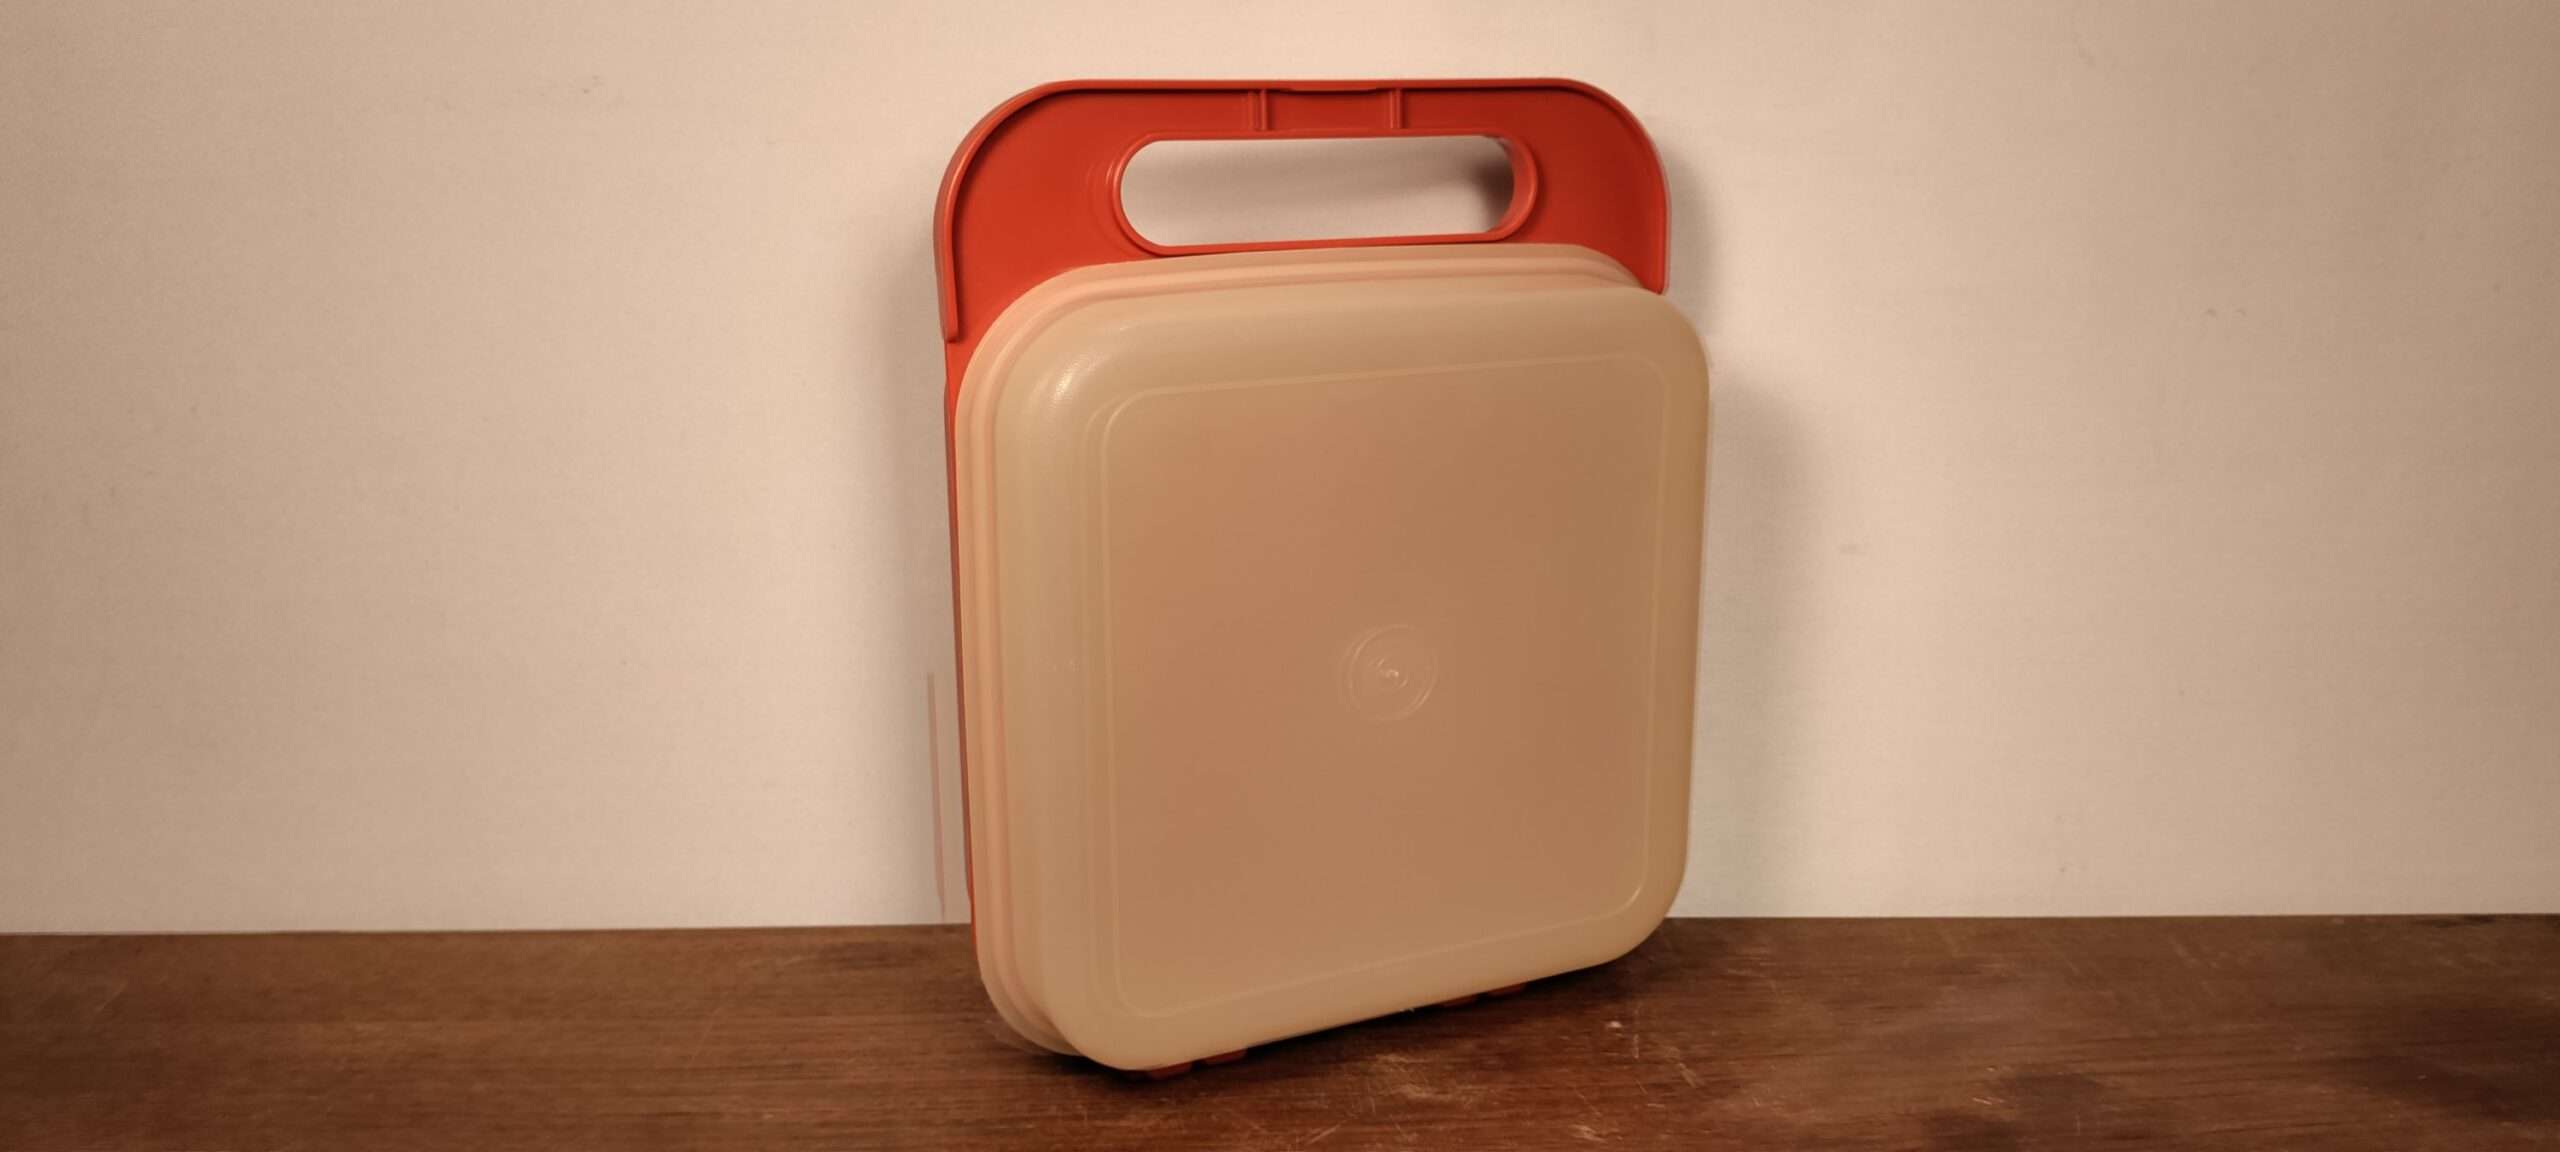 Vintage Tupperware Lunchbox - Orangerød. • Møllers smukkelamper.dk Retro og vintage og lampedele